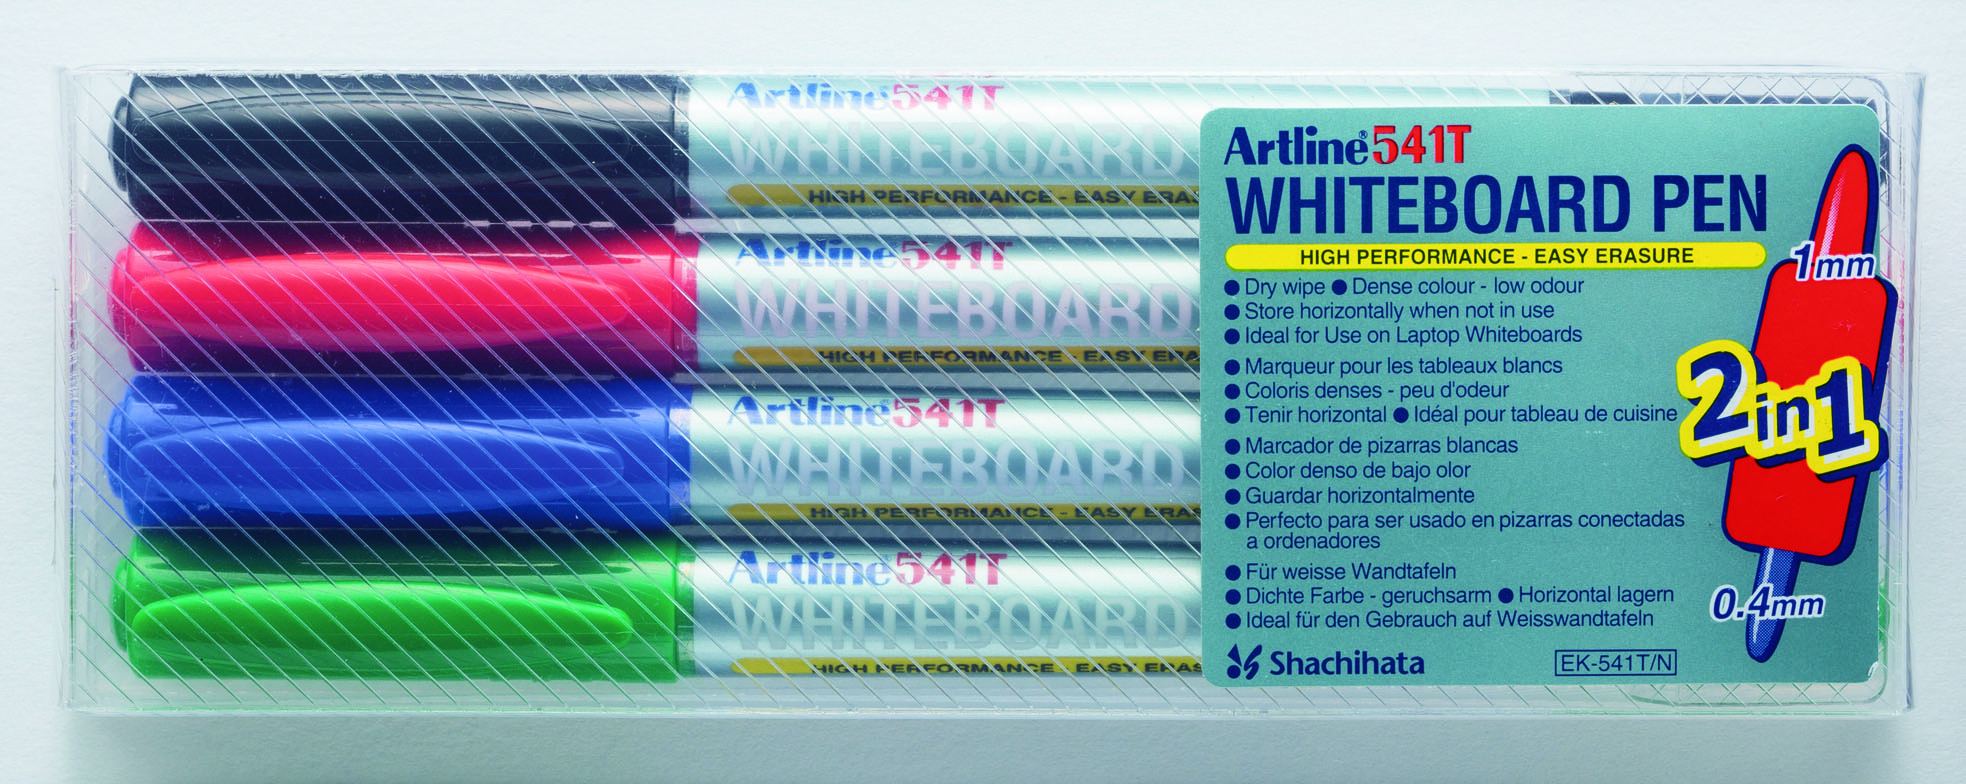 Artline Whiteboardpenn 541T 2i1 Sett med 4 farger